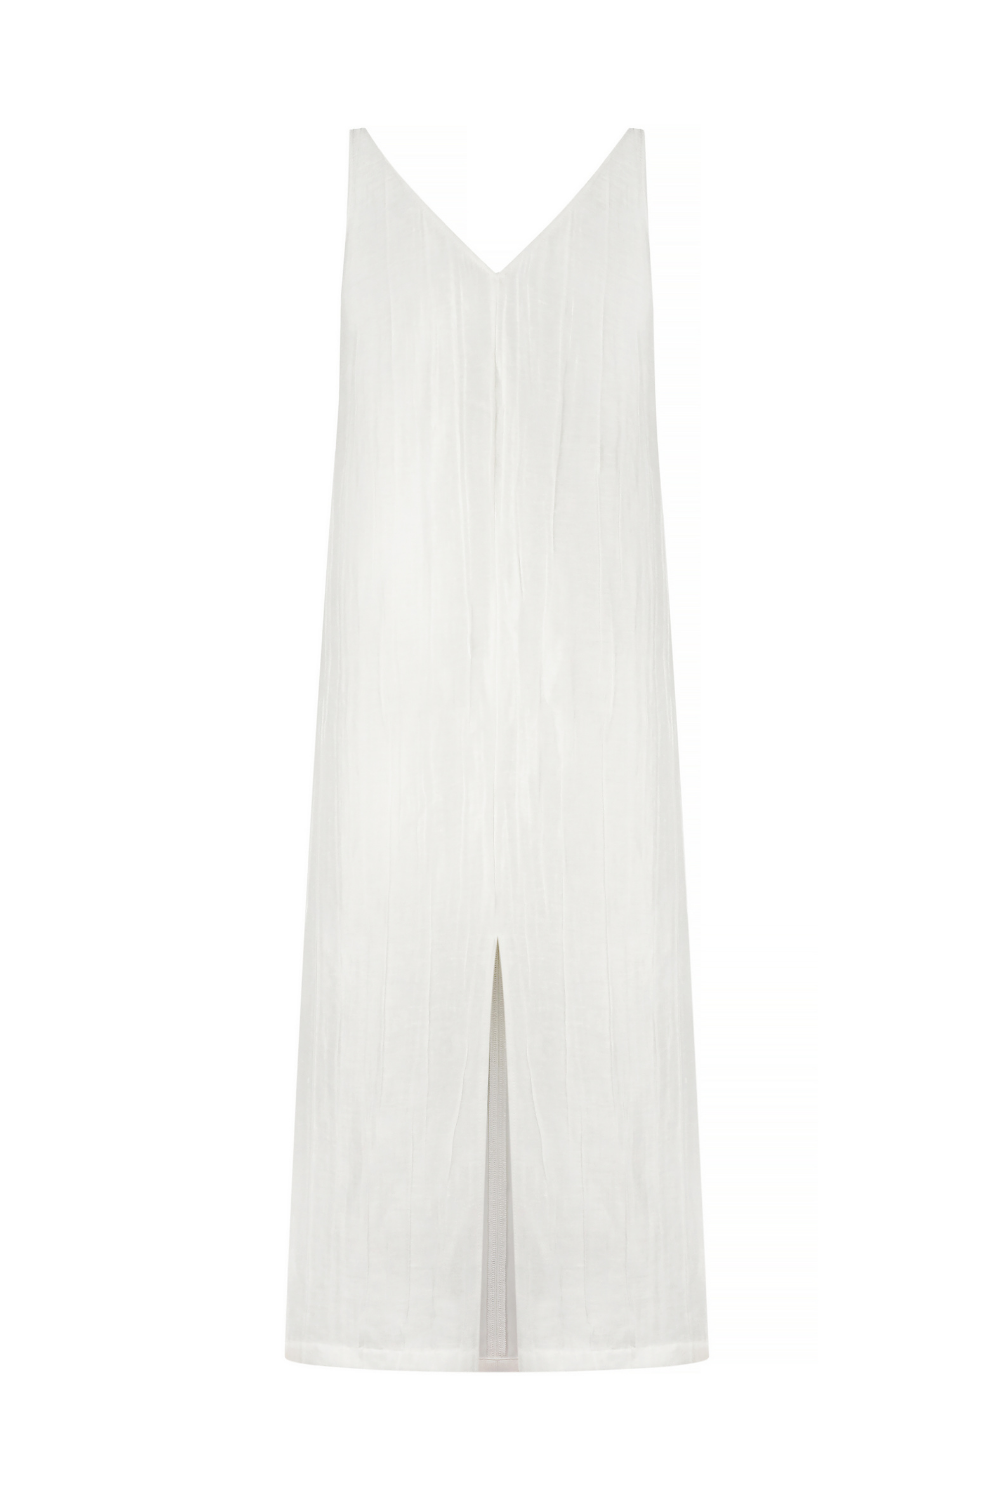 Šaty bílé s organzou na podšívce, (Strelnikova), F022-775